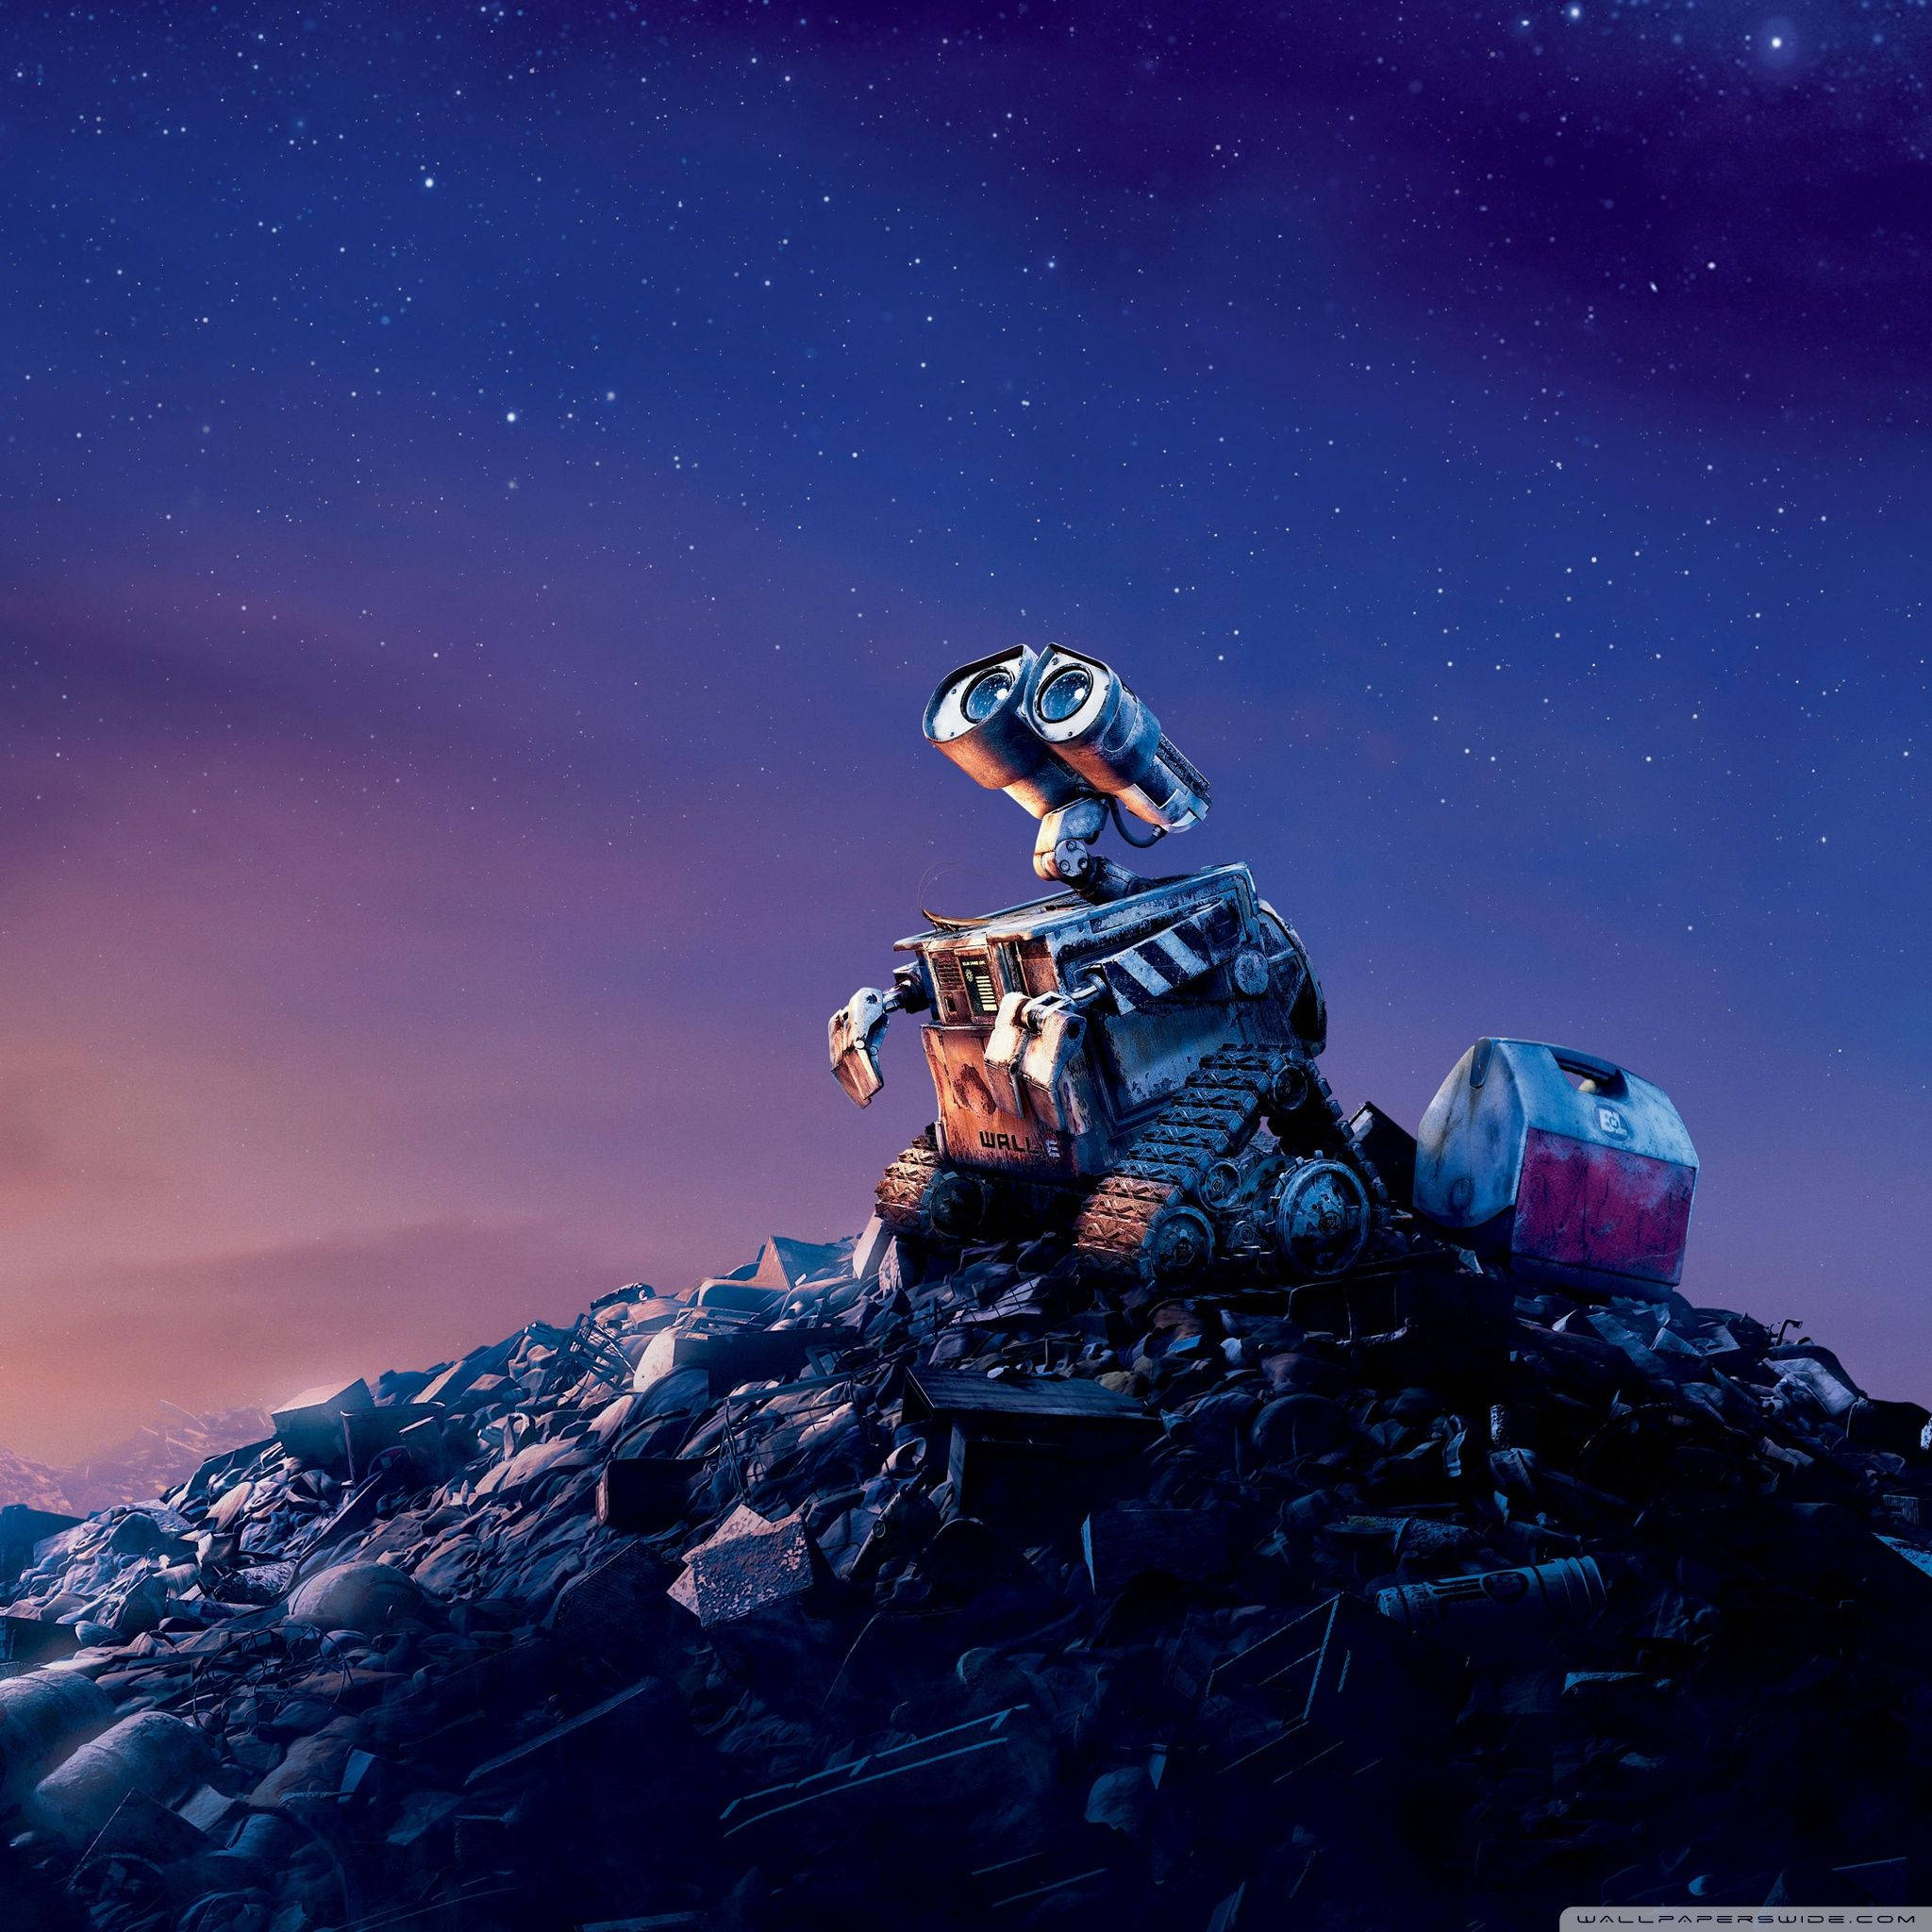 Wall-e Night Sky Ipad Retina Background